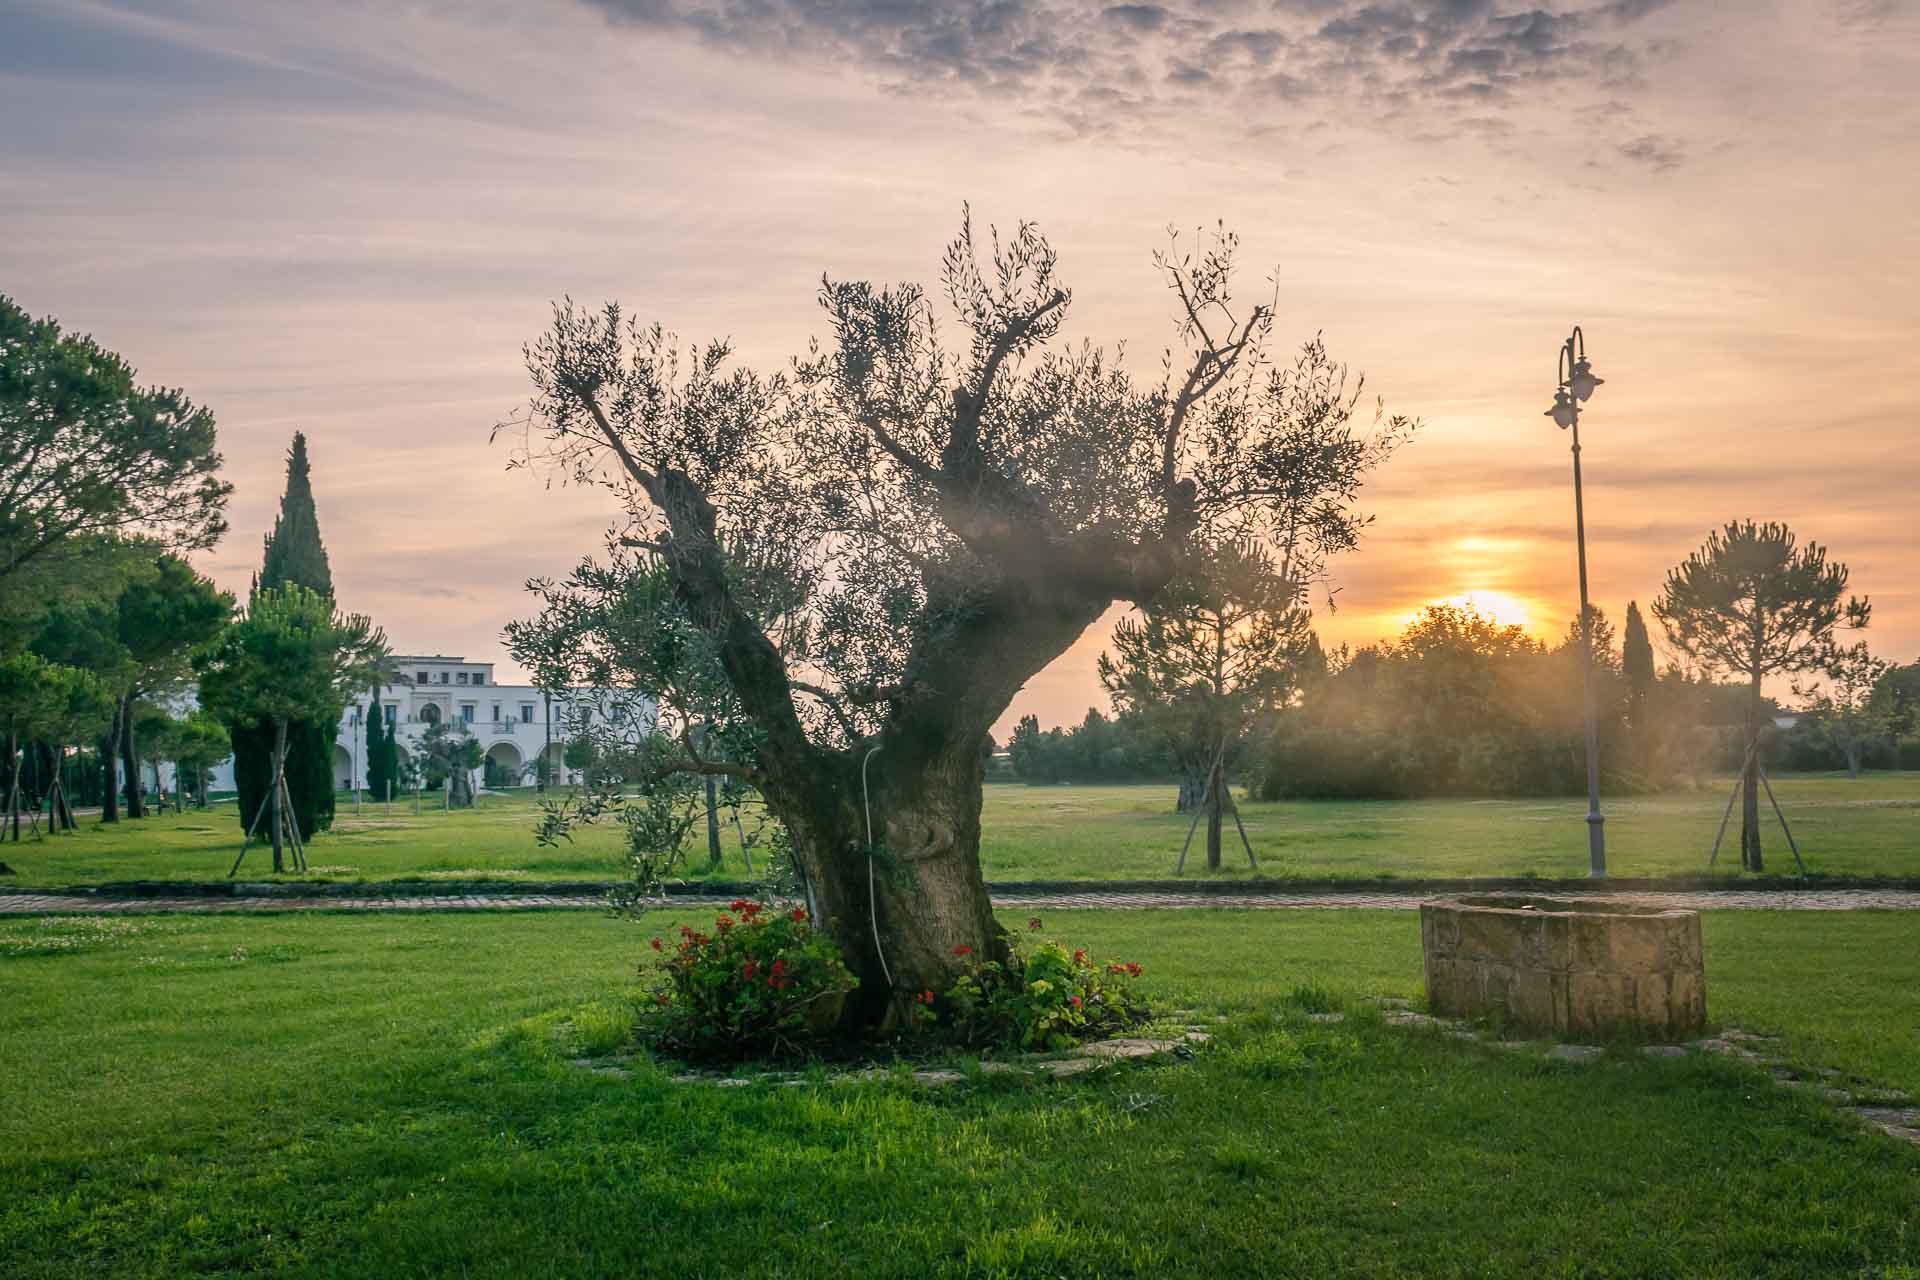 Uma oliveira velha no centro da foto com o sol se ponto no horizonte e um casarão ao fundo